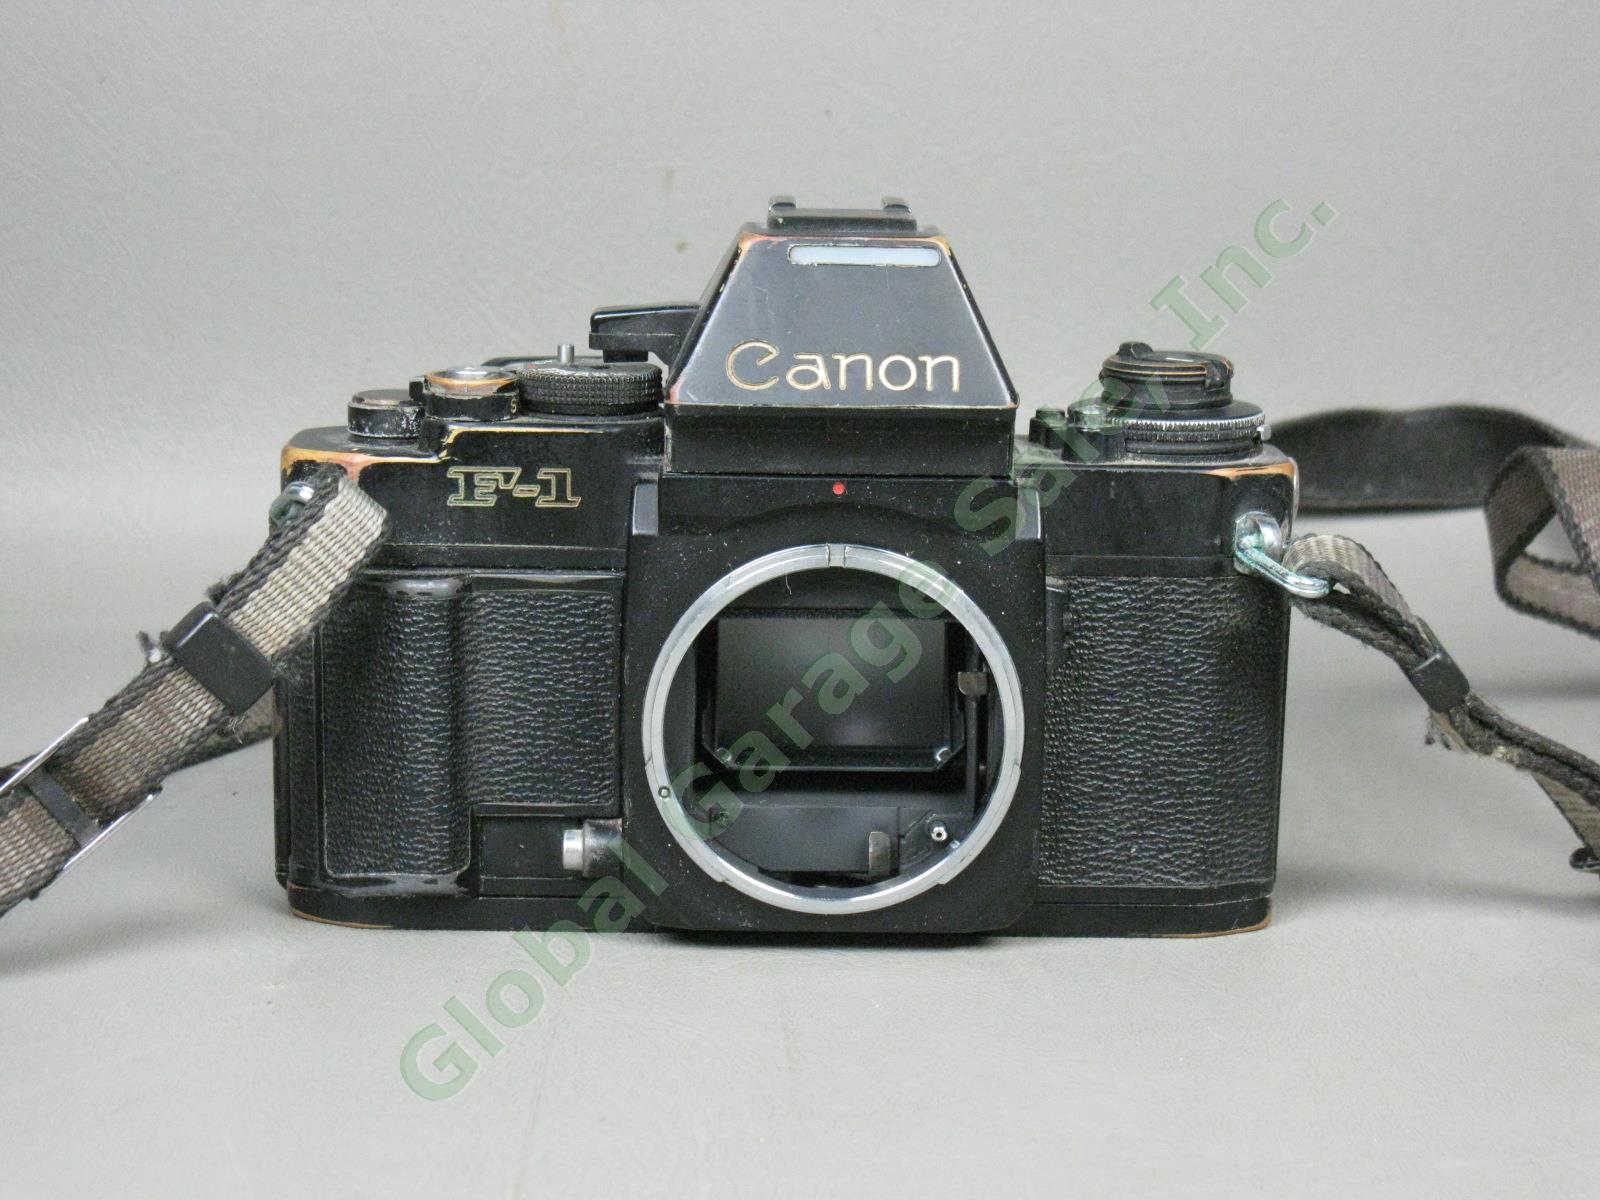 Vtg 1970s Canon F-1 35mm SLR Film Camera FD 35-105mm 1:3.5-4.5 Zoom Lens As-Is 6